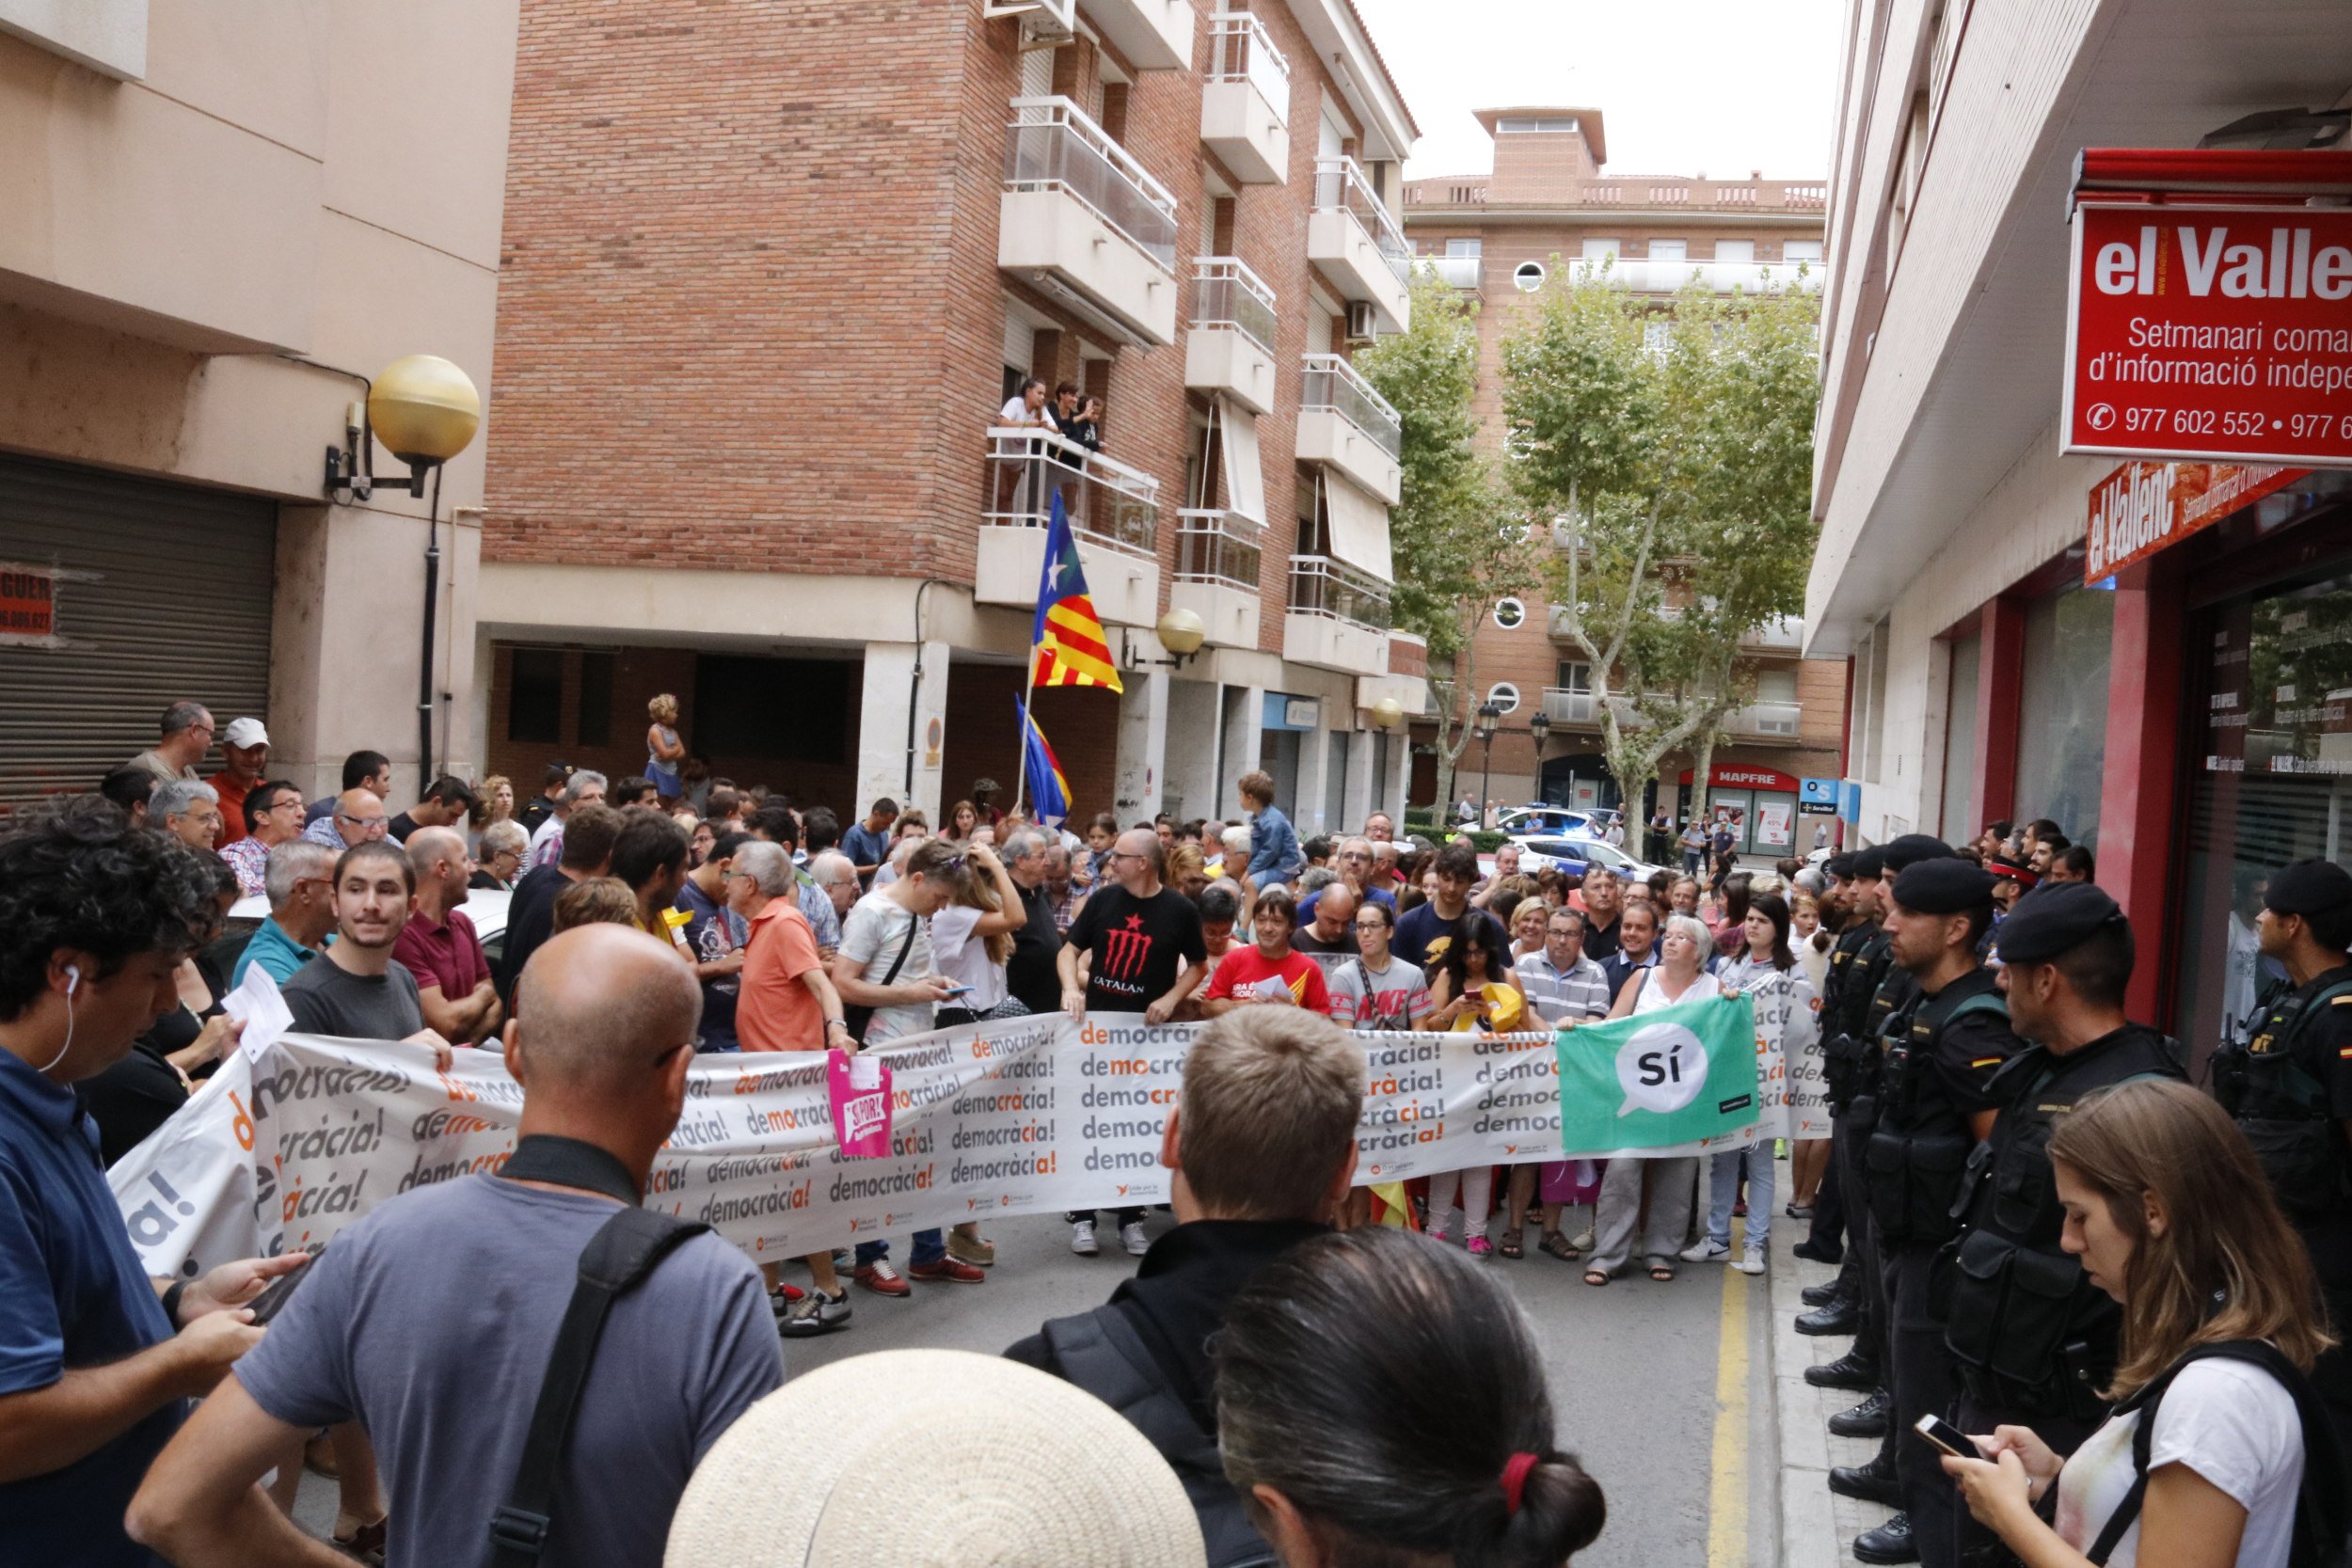 El Col·legi de Periodistes condemna l'escorcoll a 'El Vallenc'